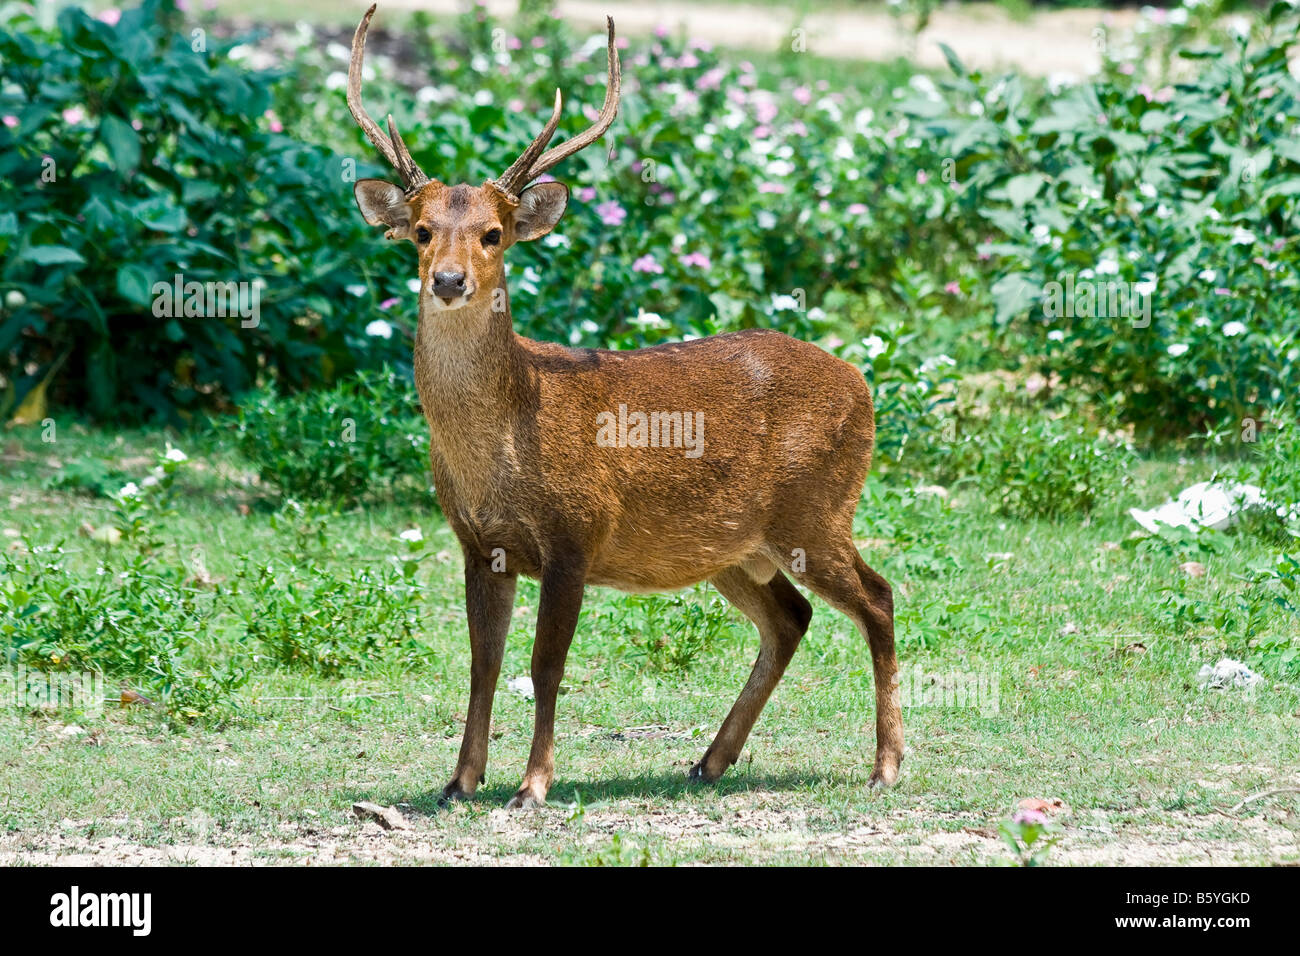 Deer hirsch horn geweih asia Stock Photo